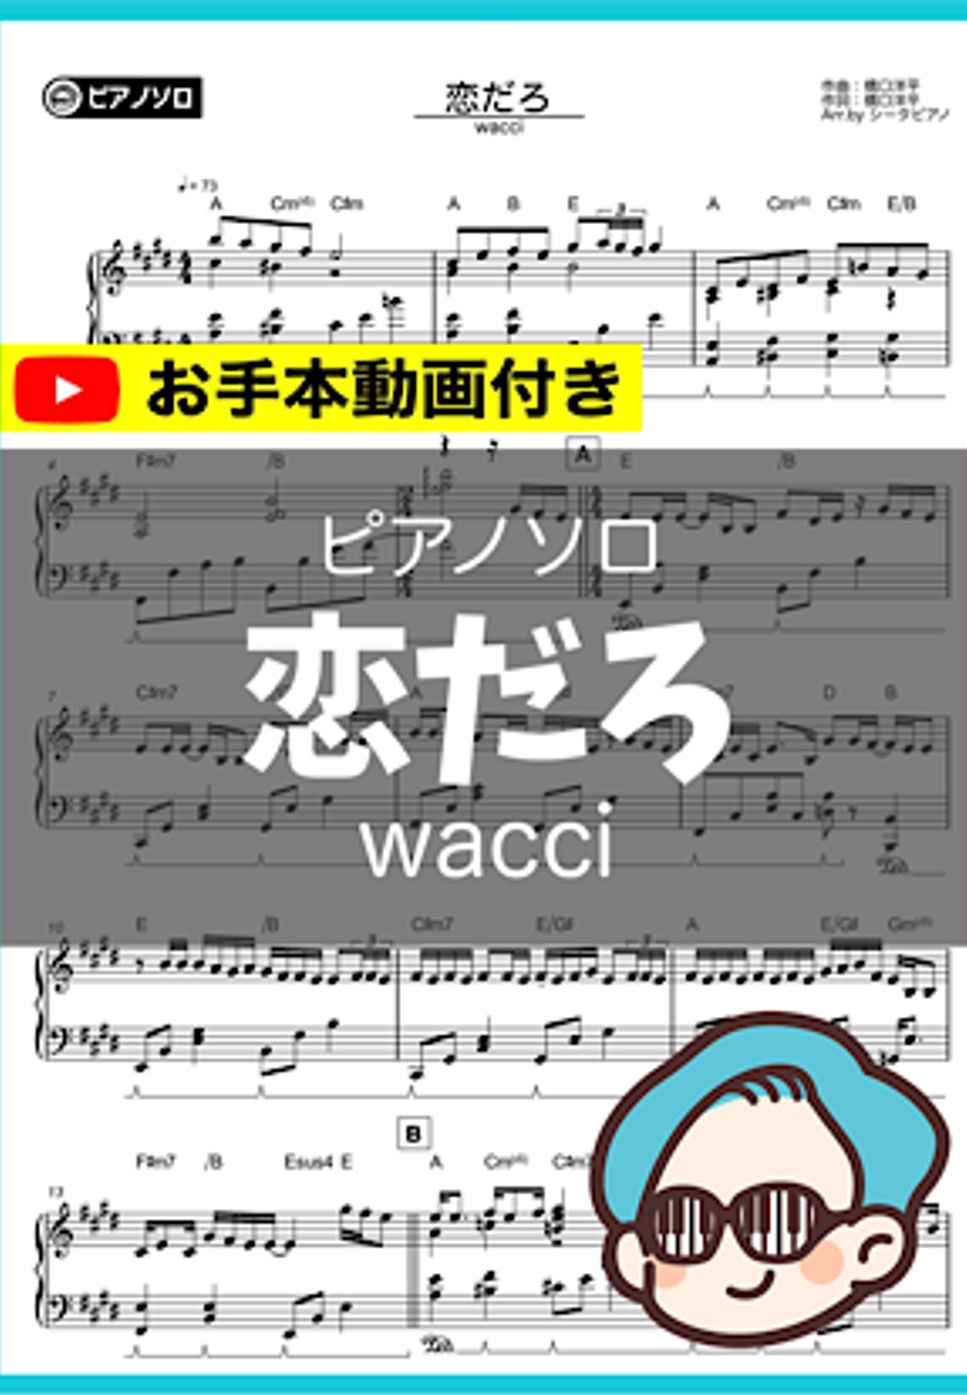 wacci - 恋だろ by シータピアノ